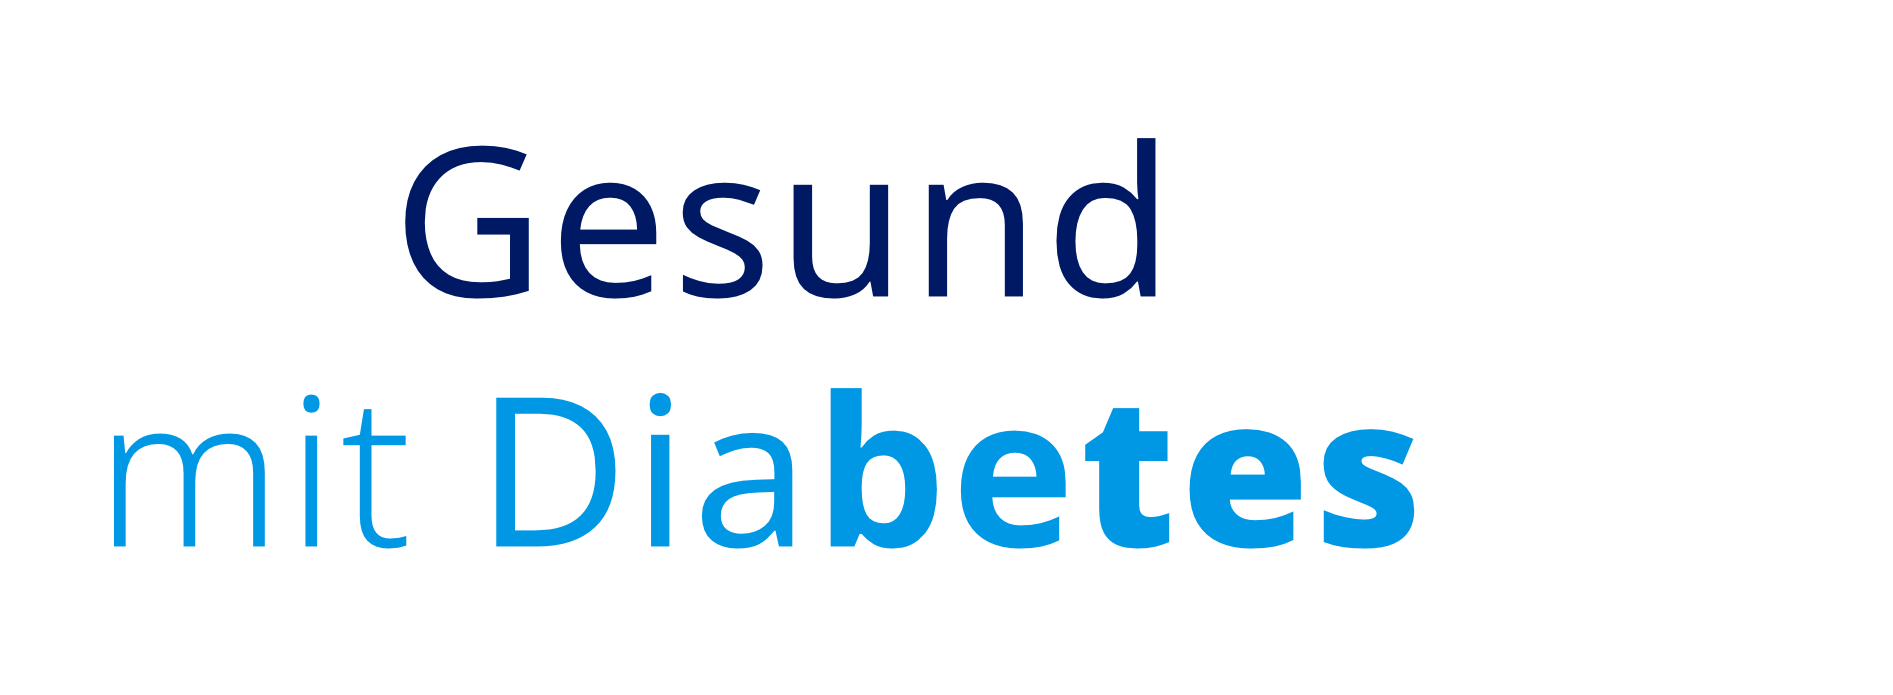 text_gesund mit diabetes